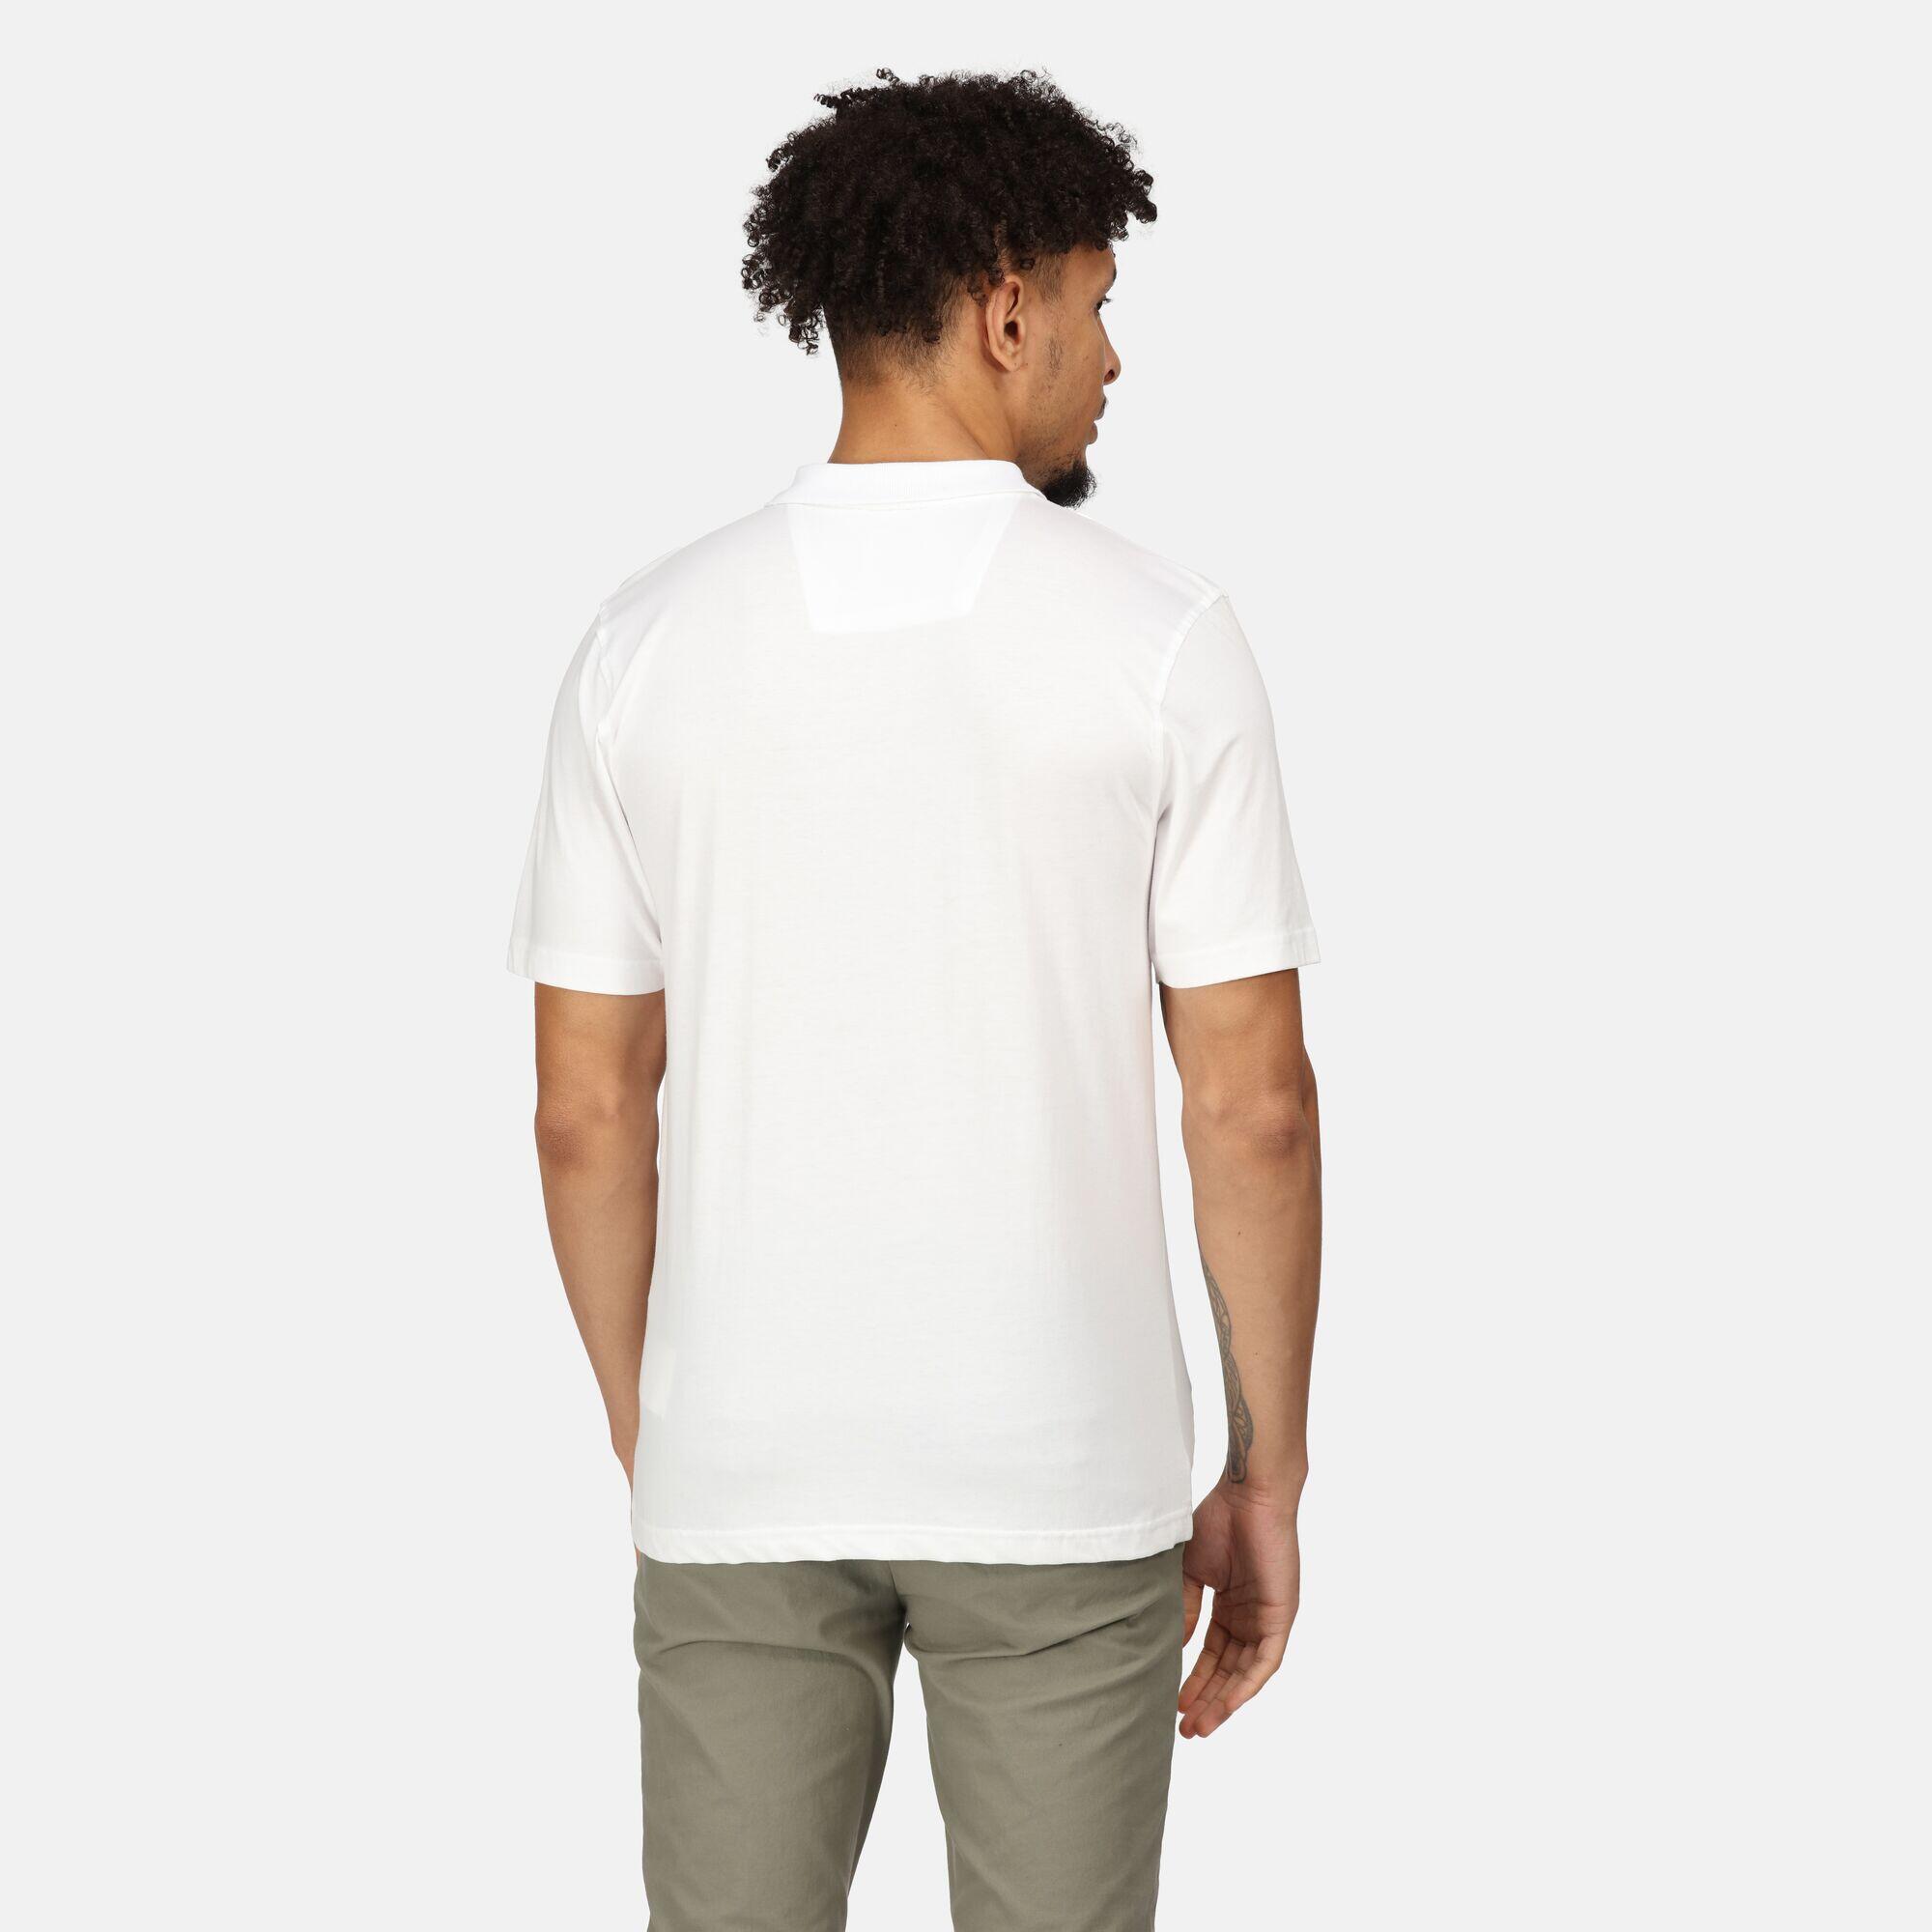 Sinton Men's Fitness Short Sleeve Polo Shirt - White 2/6